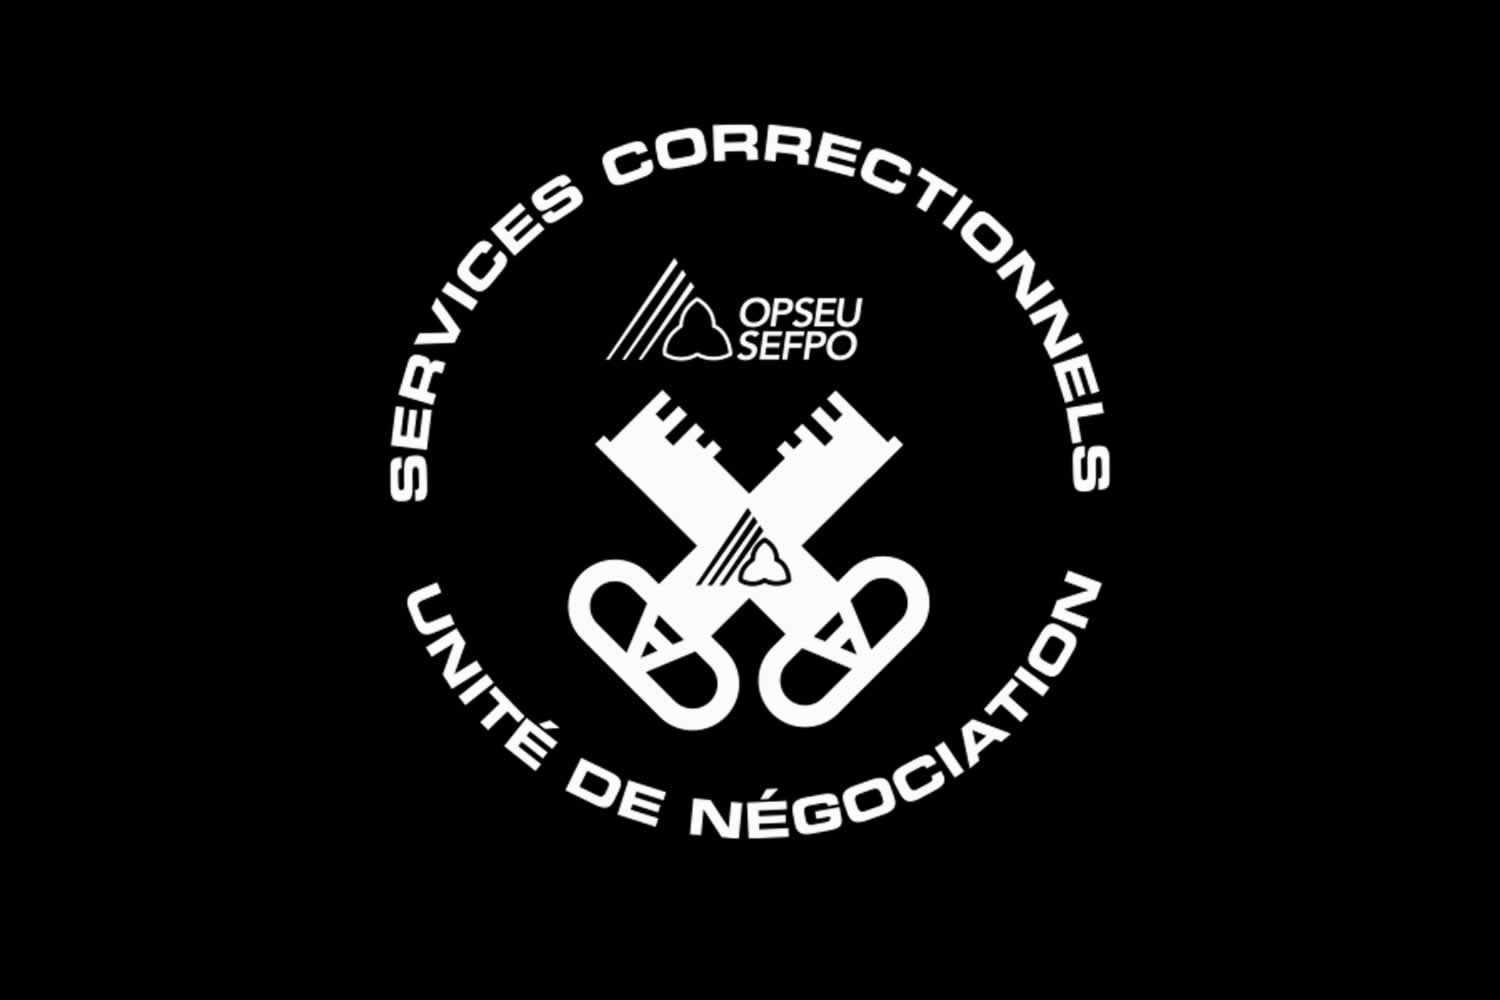 Services Correctionnels, Unite de Negociation Logo